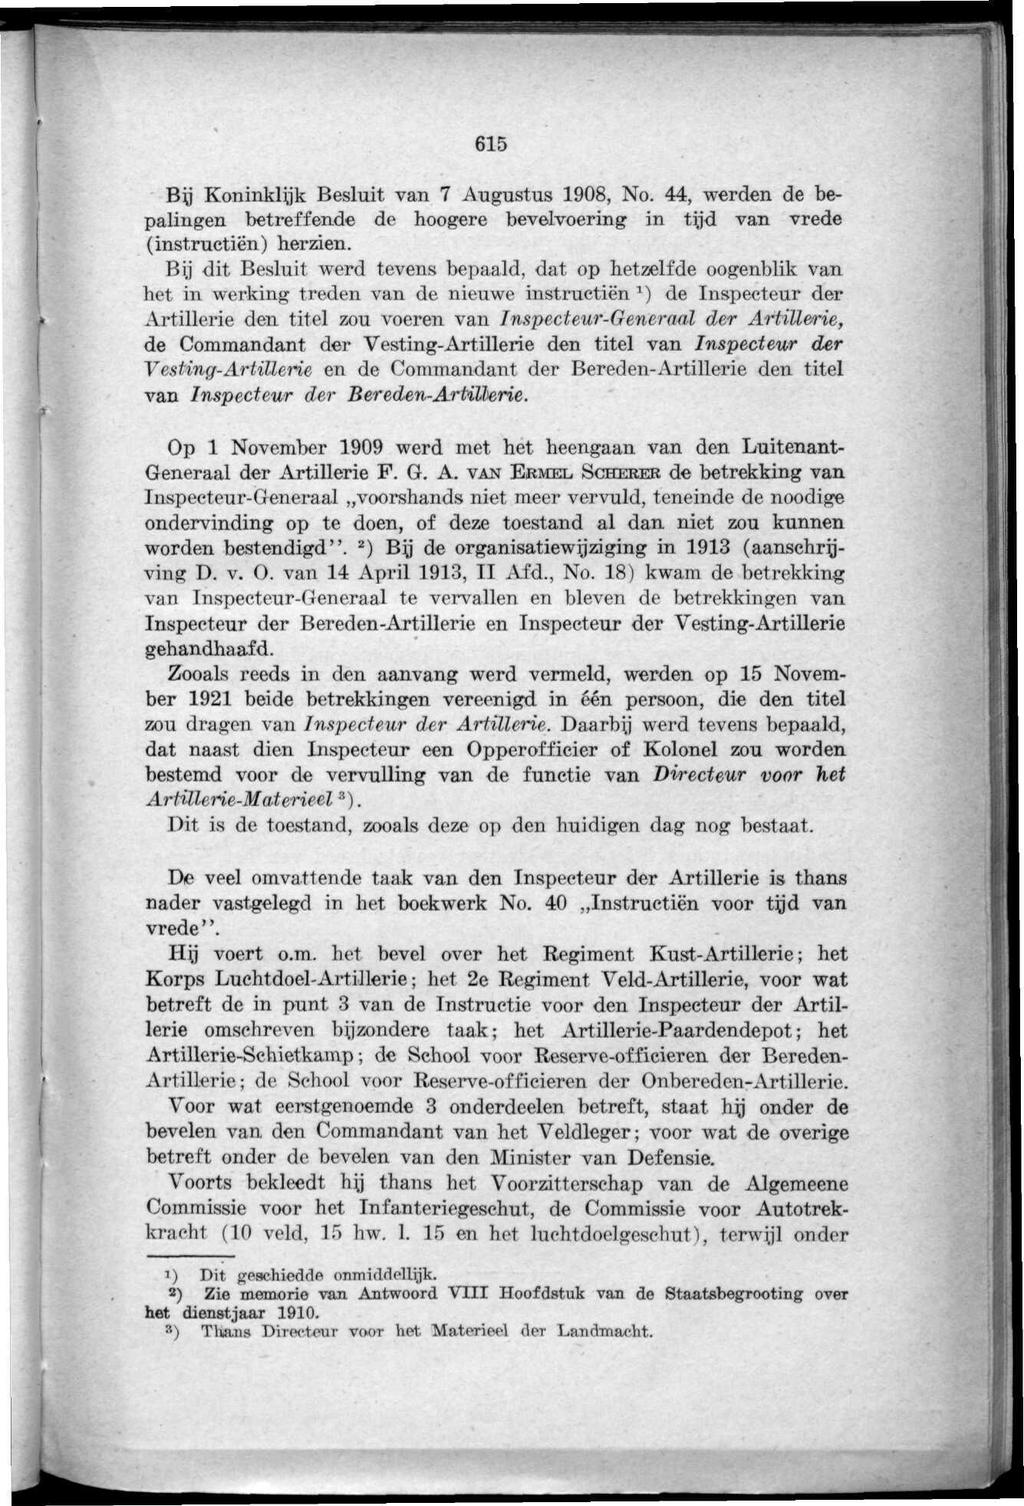 615 By Koninklijk Besluit van 7 Augustus 1908, No. 44, werden de bepalingen betreffende de hoogere bevelvoering in tfl'd van vrede (instructiën) herzien.